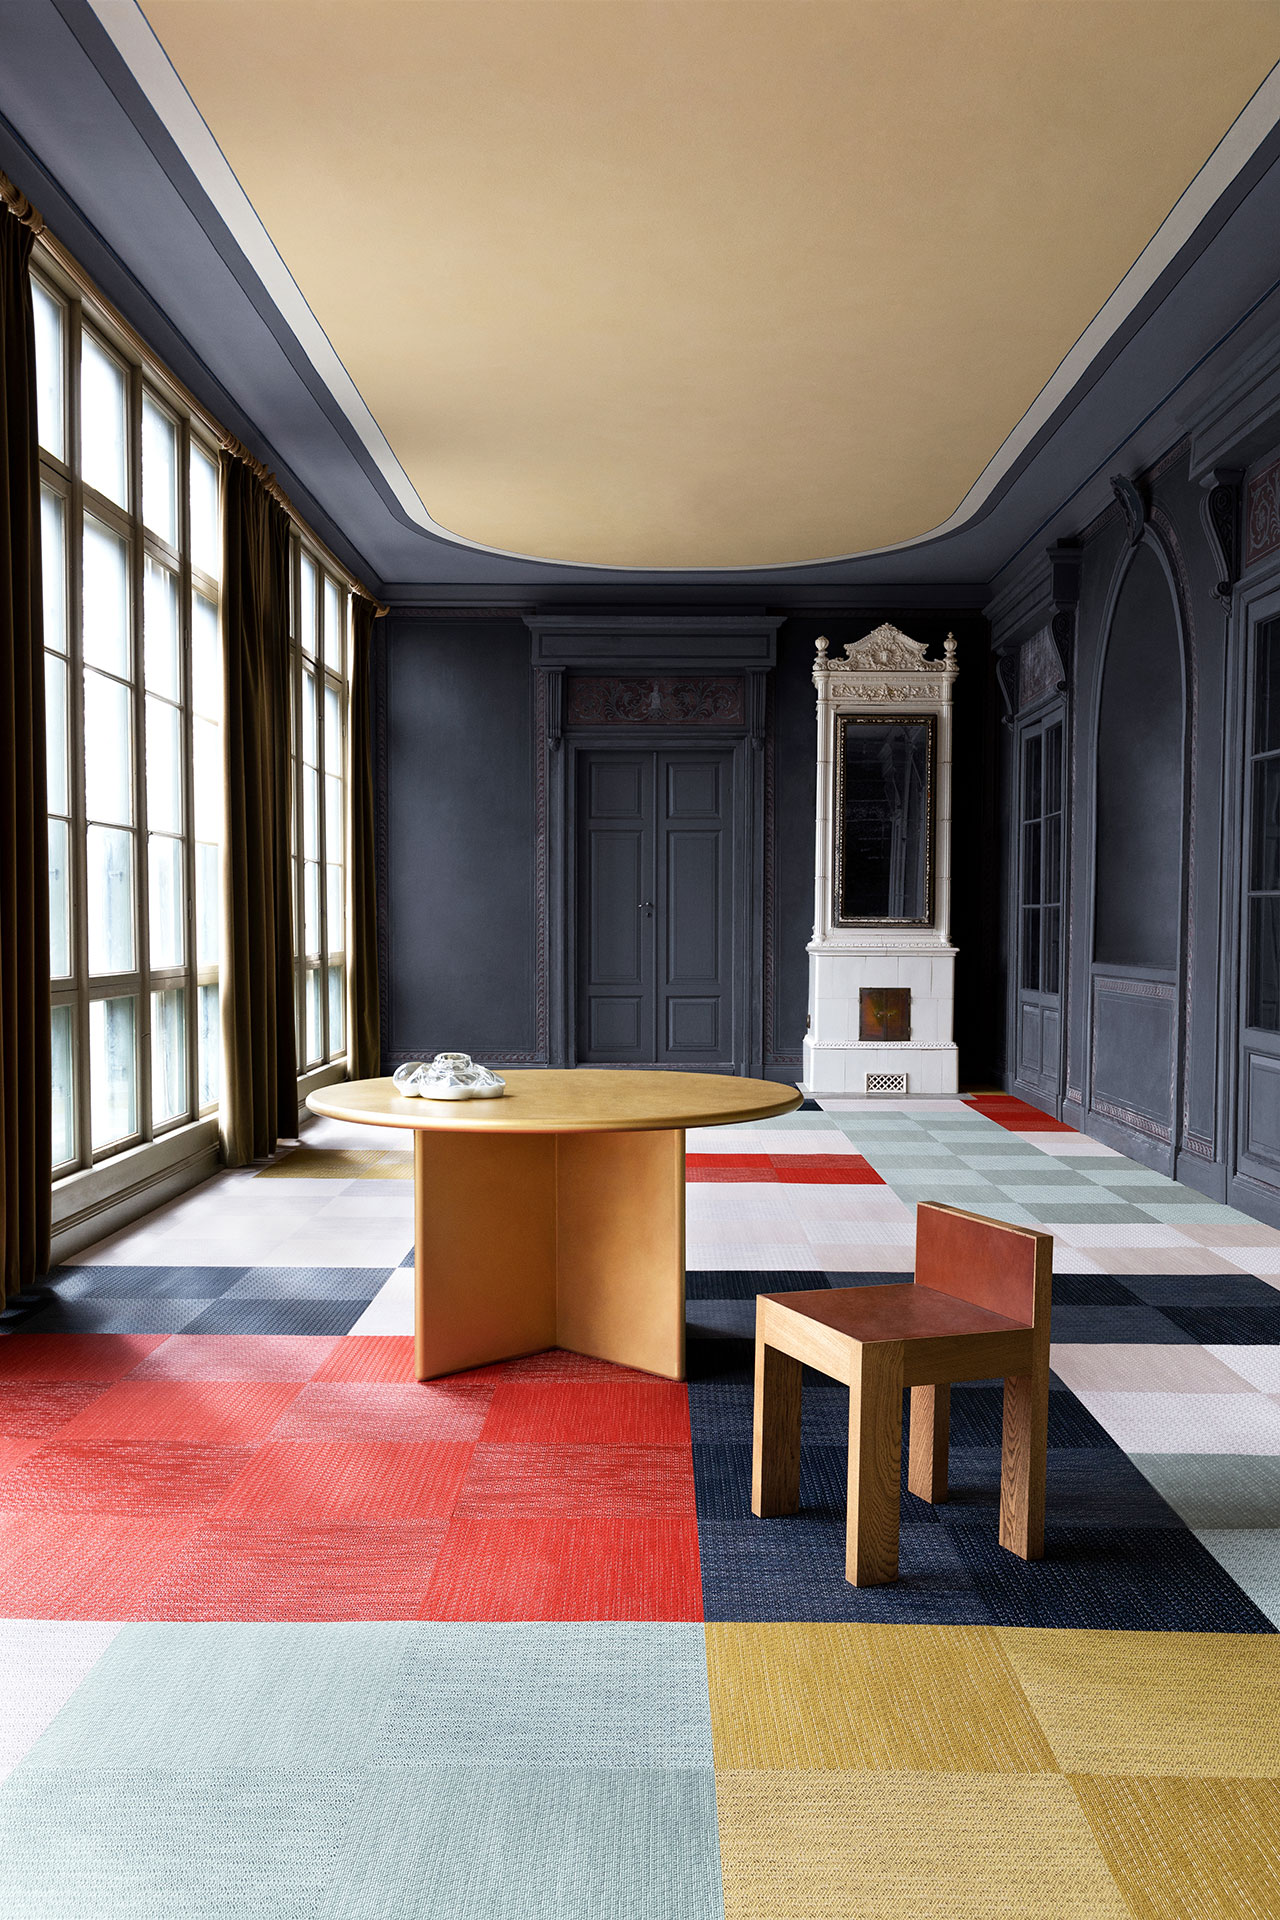 'Artisan' flooring collection by Bolon.
Photography courtesy of Bolon.